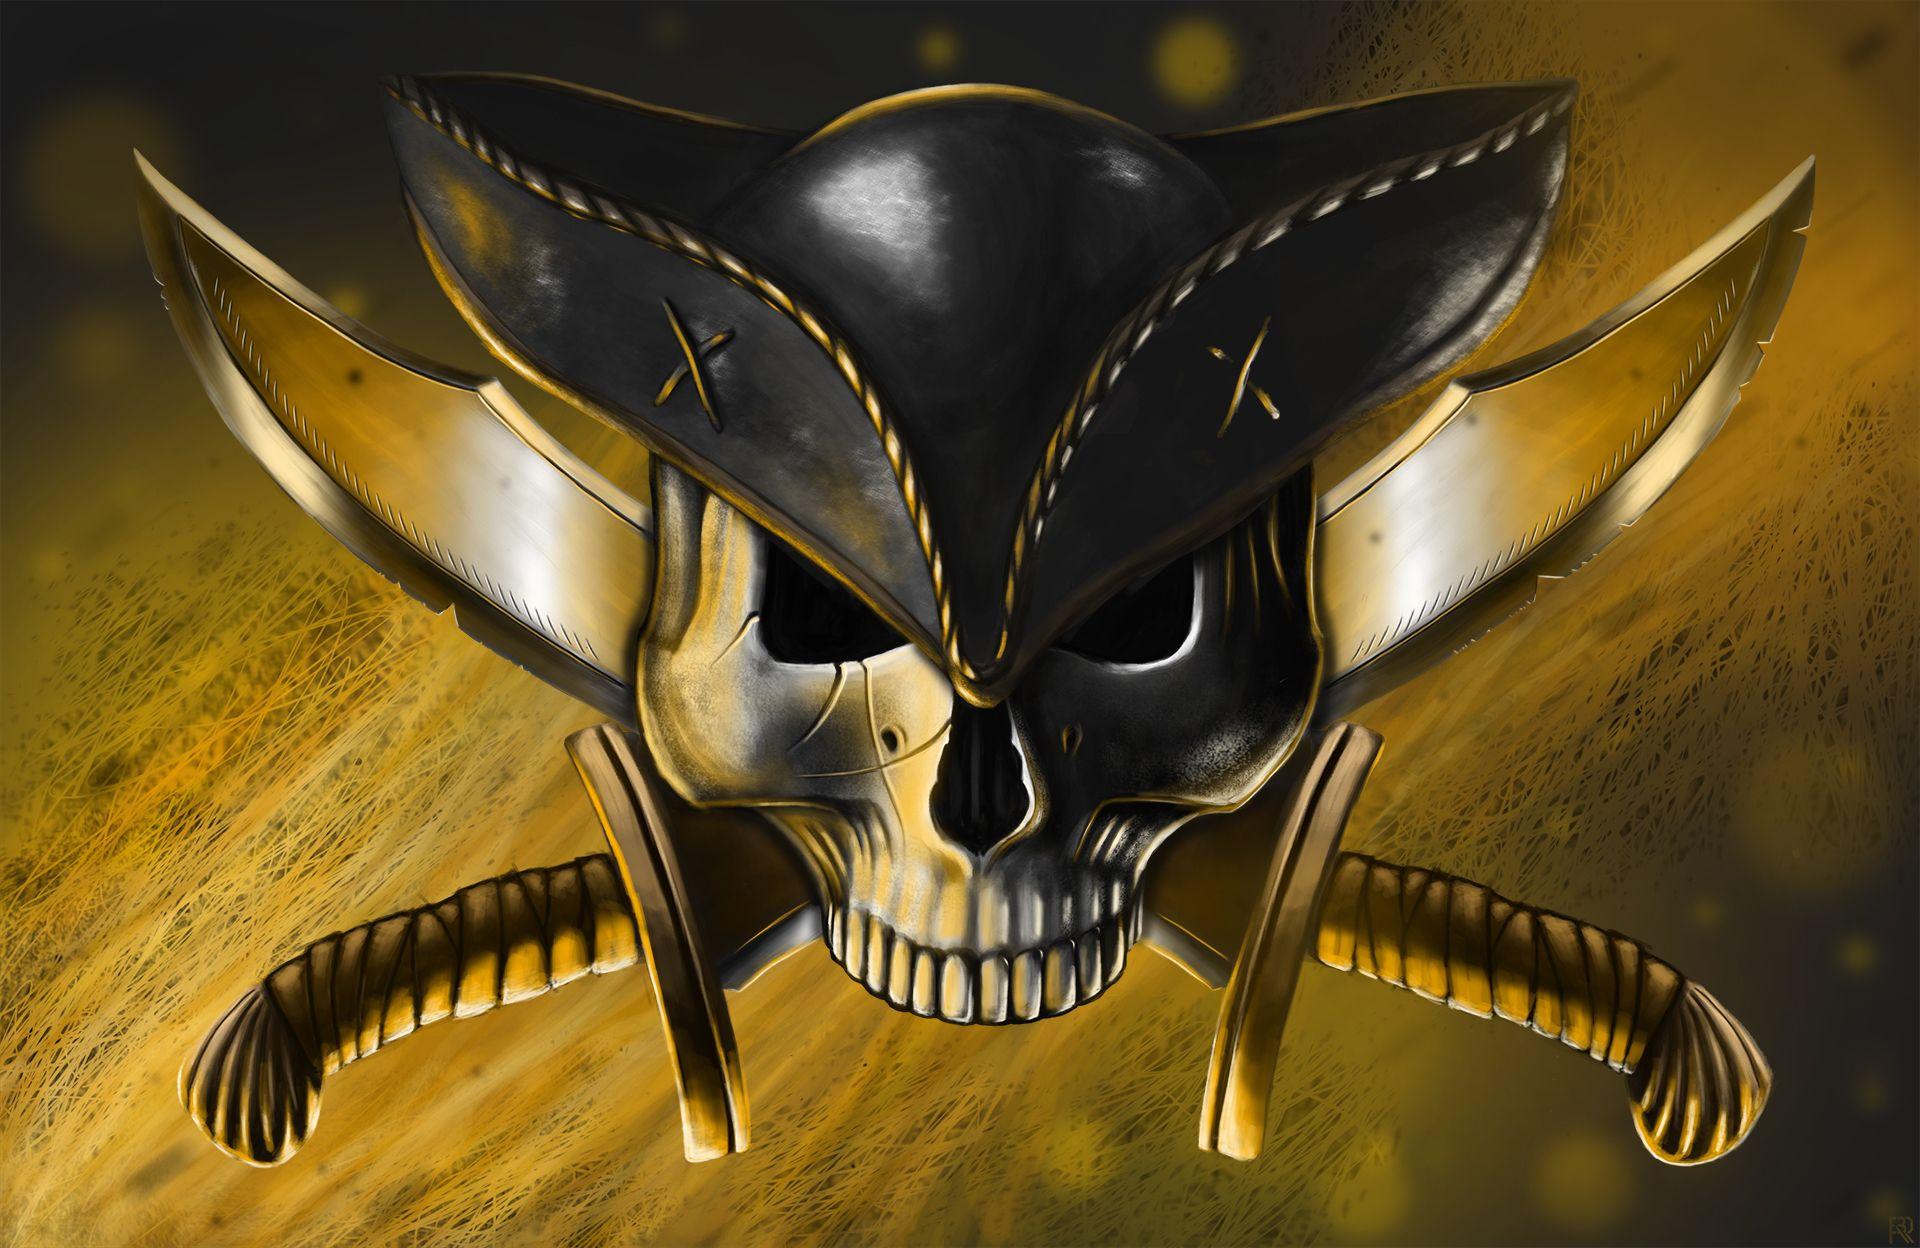 Art pirate skull hat guns knives Jolly Roger wallpaperx1248